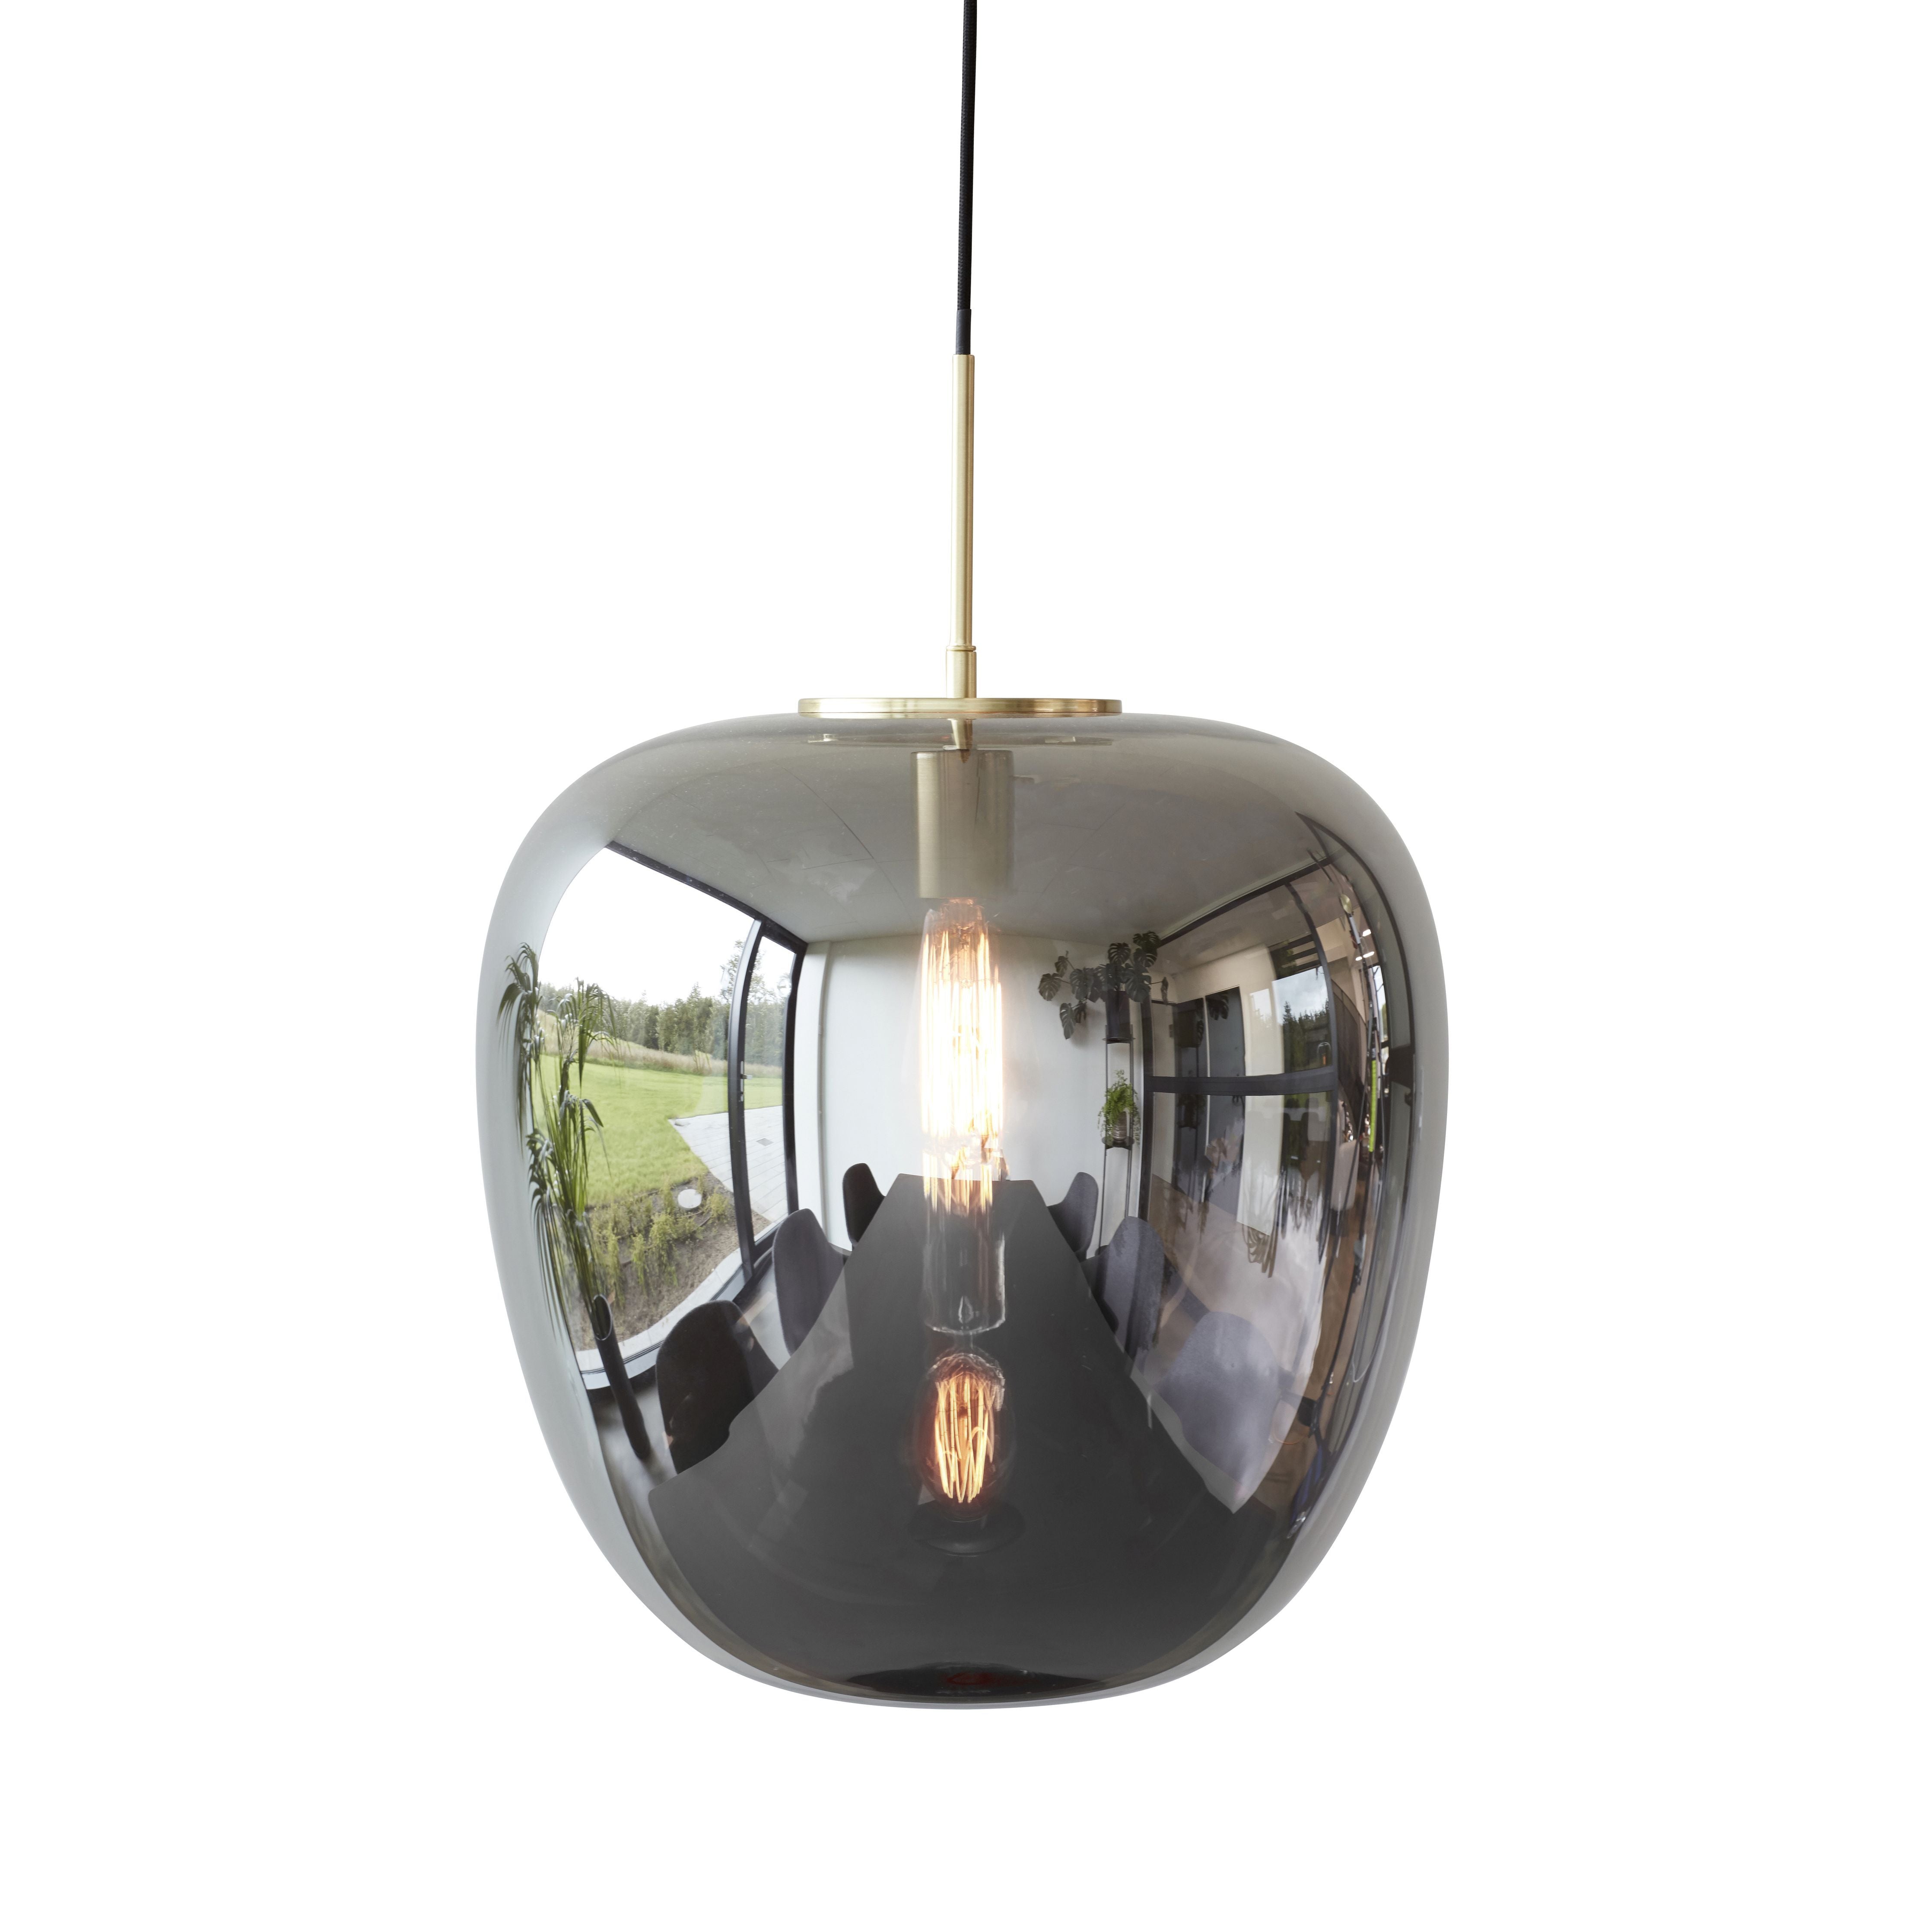 Hübsch Reflektera lampglasjärn/mässing, 40x40 cm